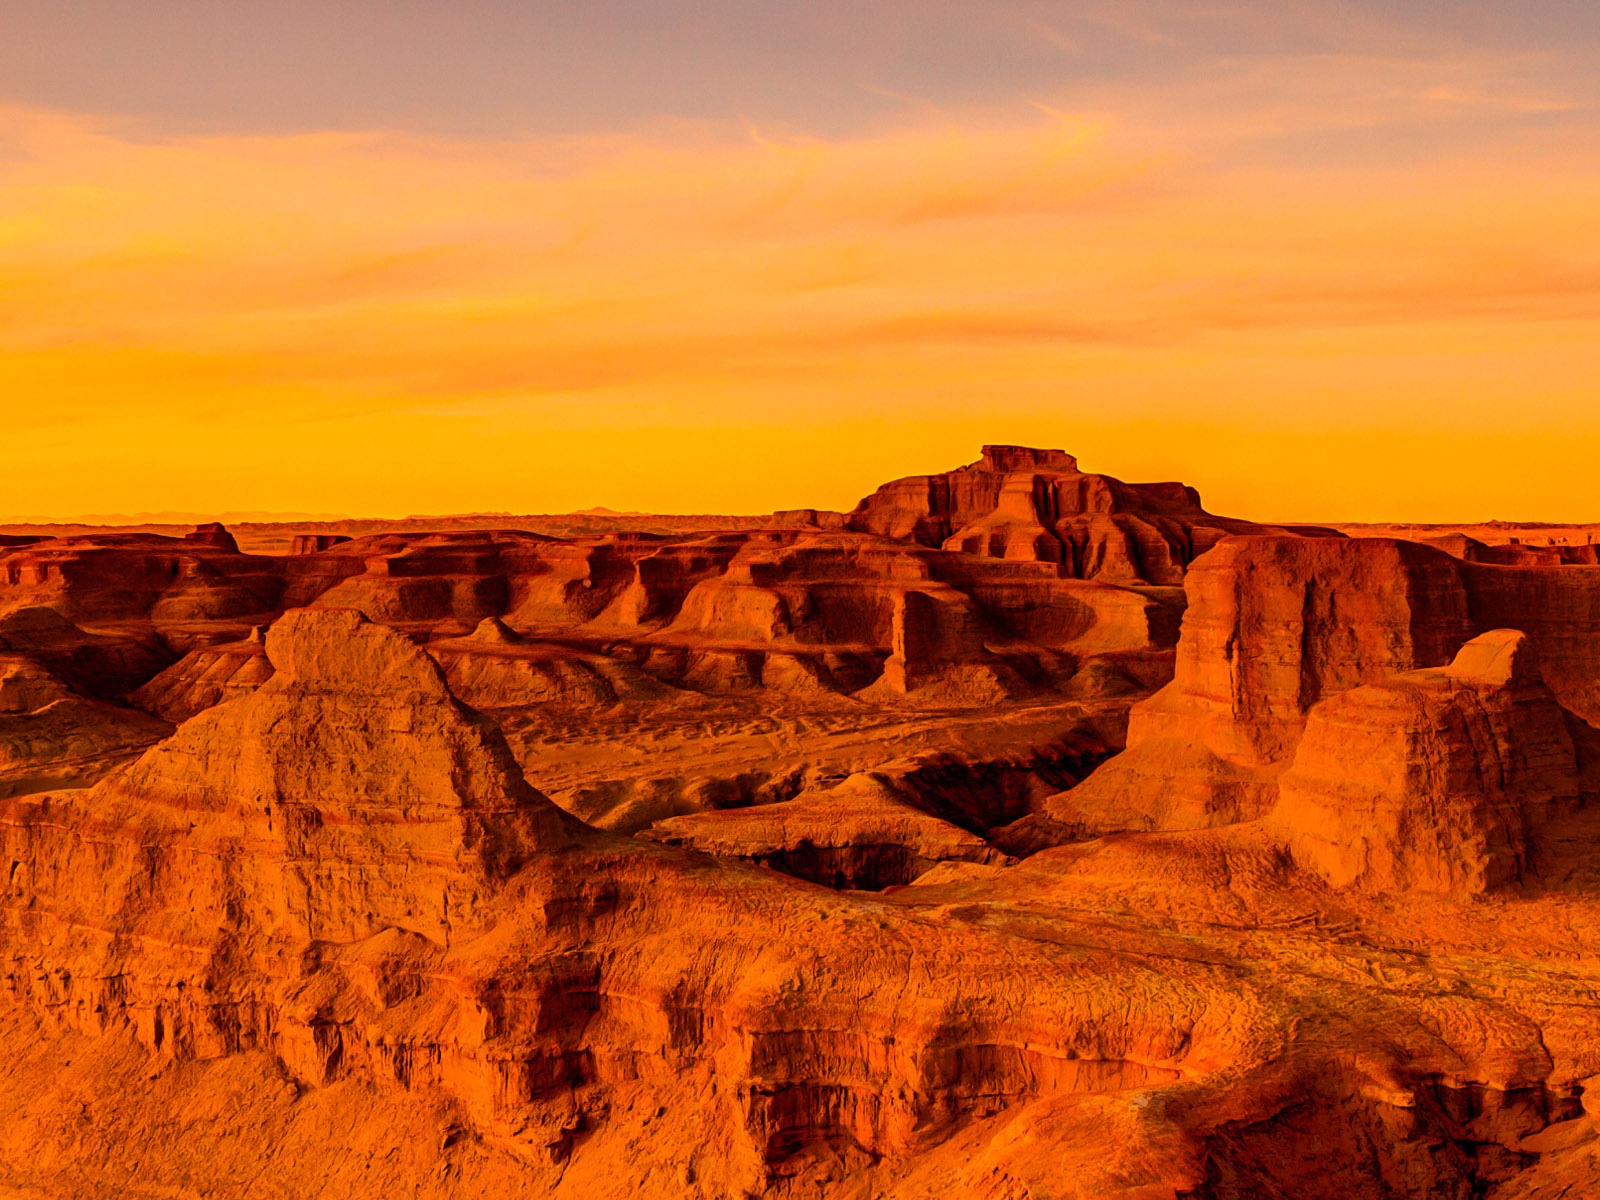 Les déserts chauds et arides, de Windows 8 fonds d'écran widescreen panoramique #6 - 1600x1200